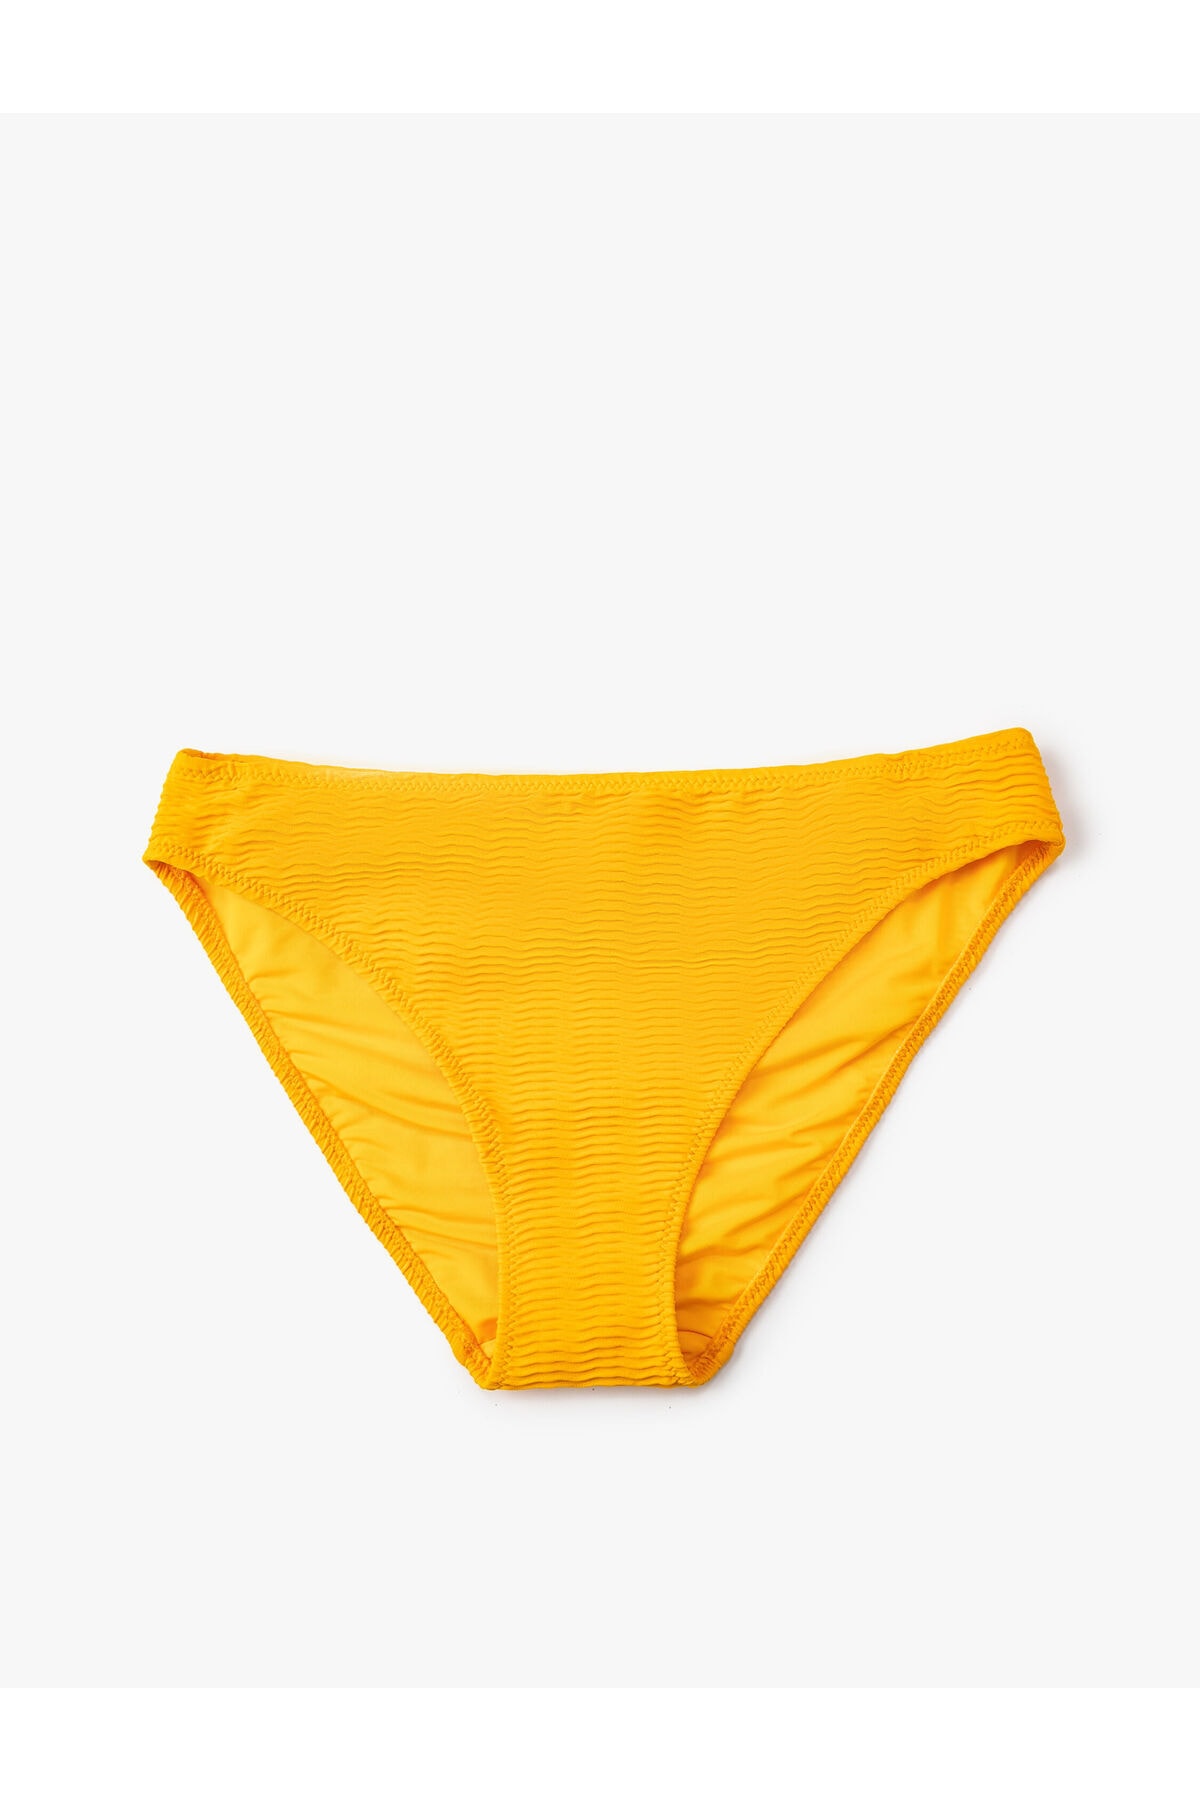 Levně Koton Textured Bikini Bottoms, Normal Waist